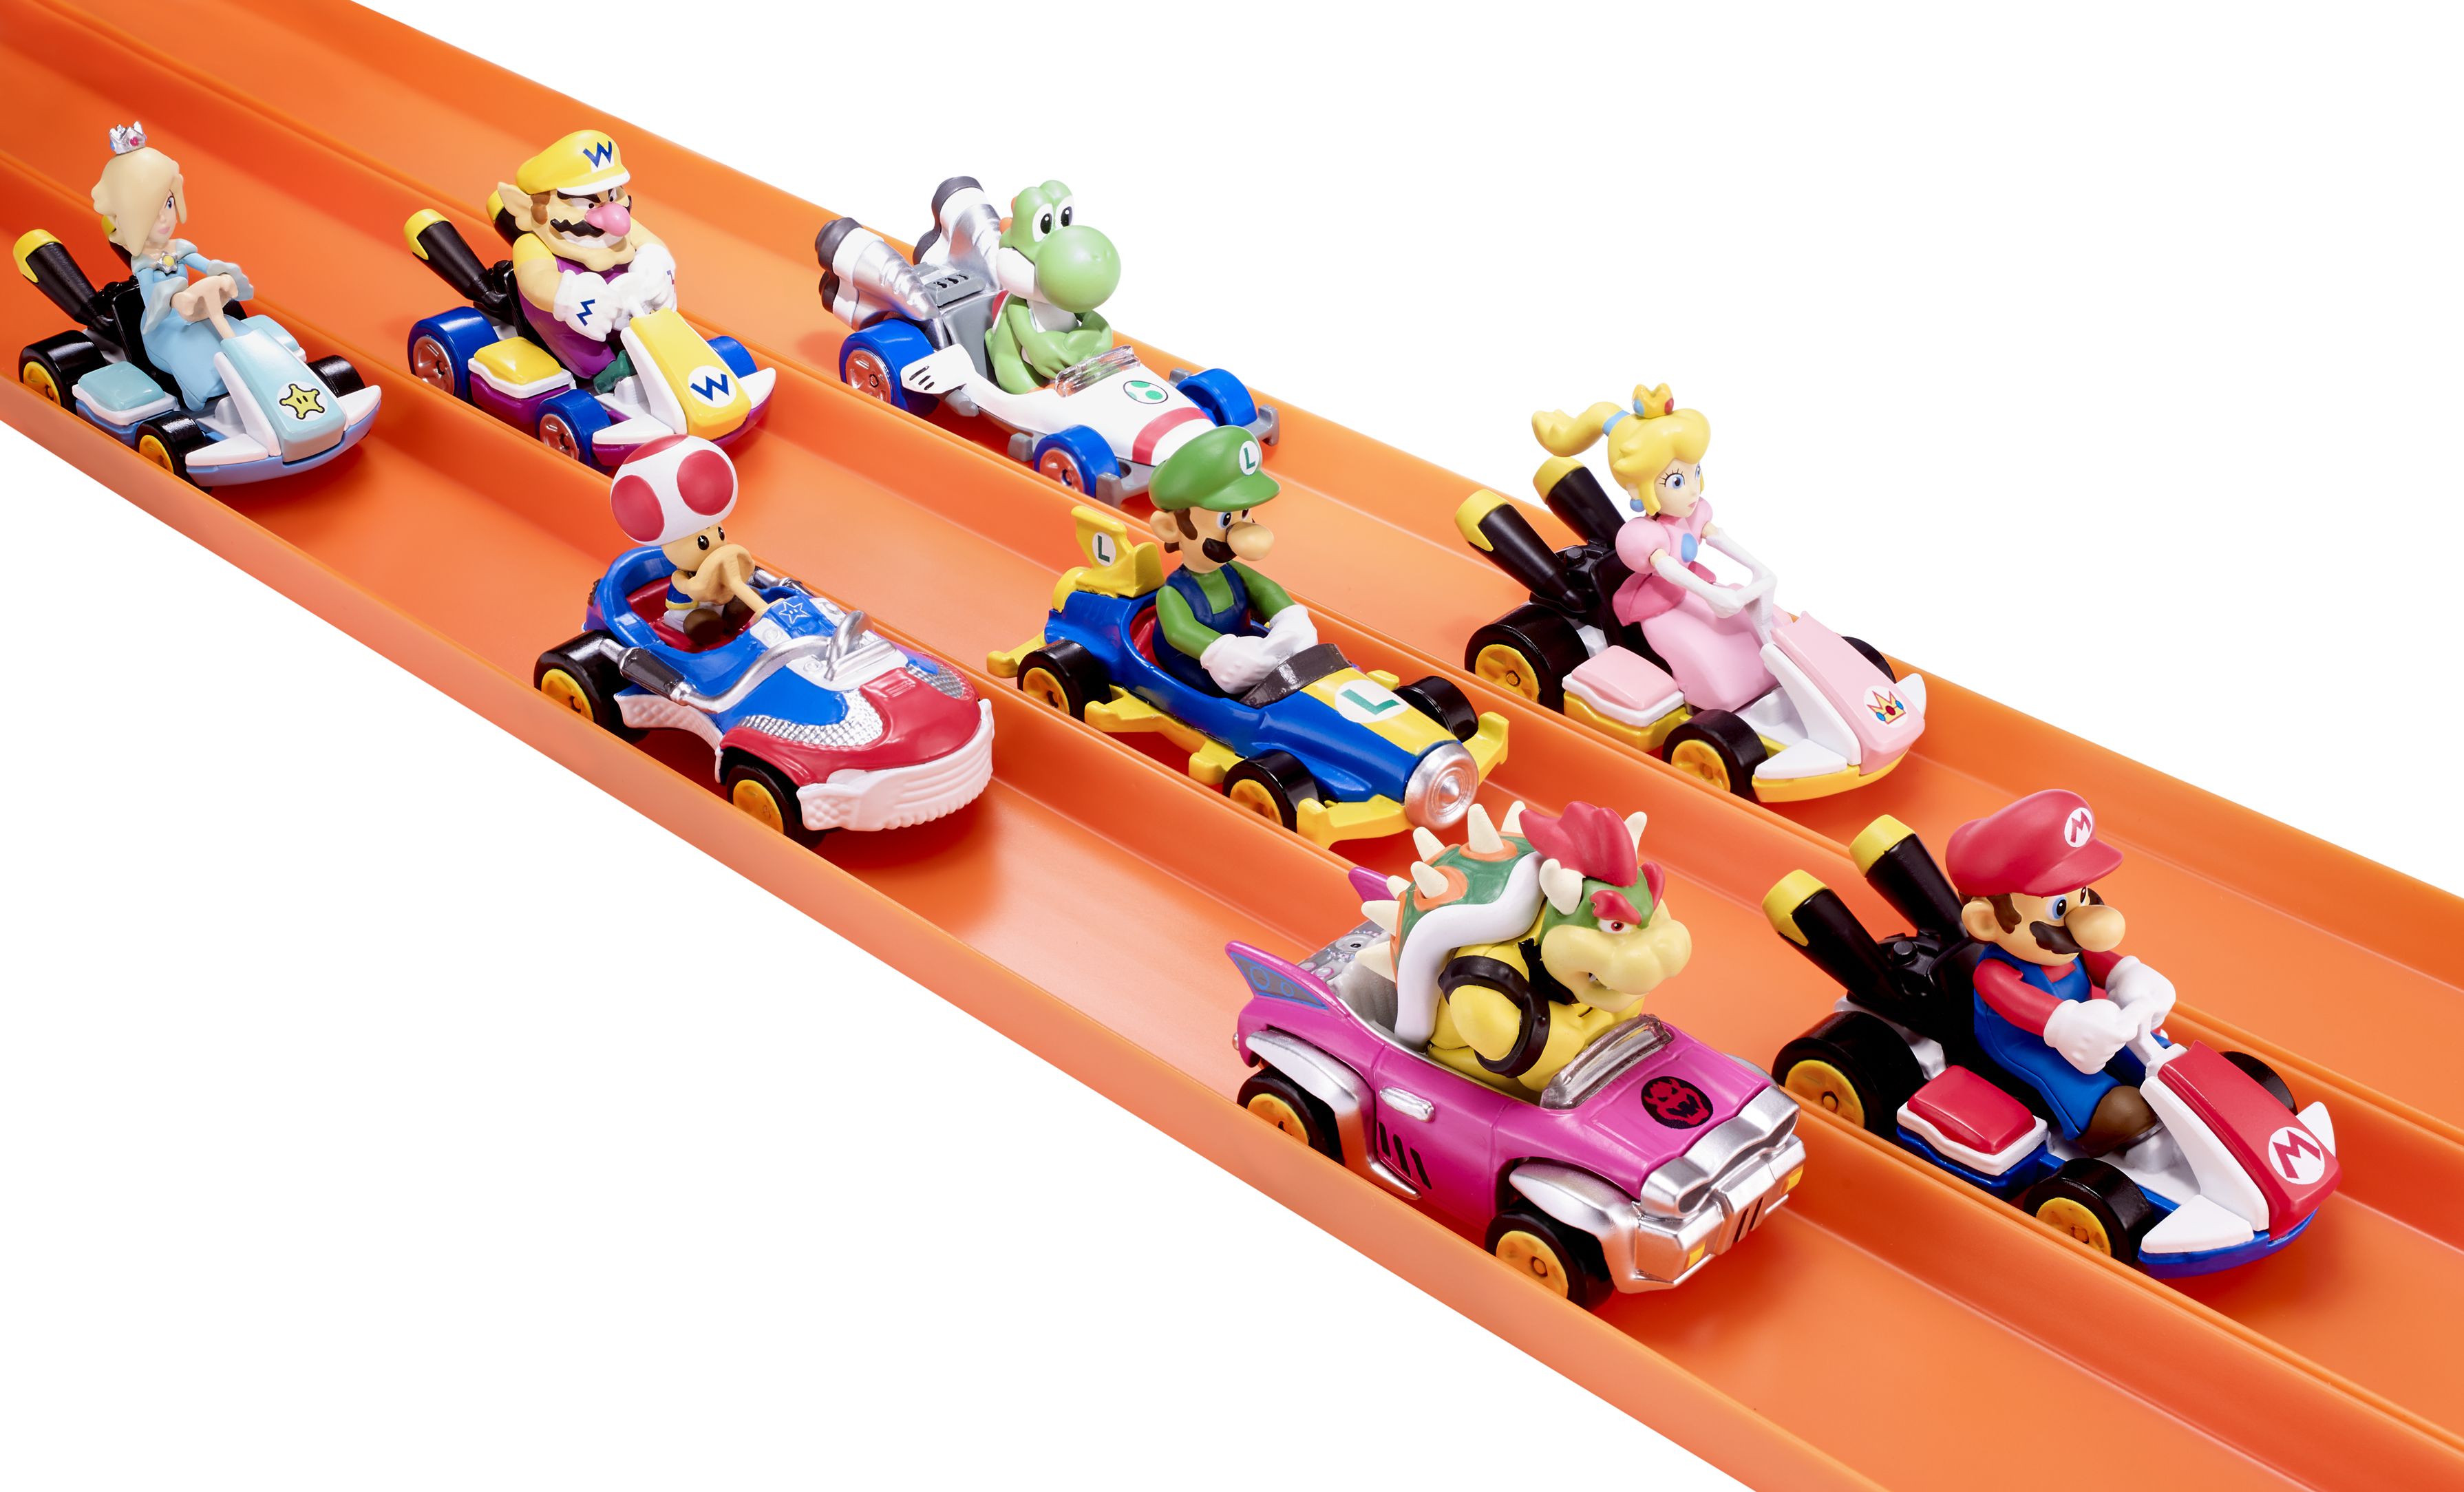 Mario Kart Hot Wheels Toys Coming Next Year Nintendo Everything.